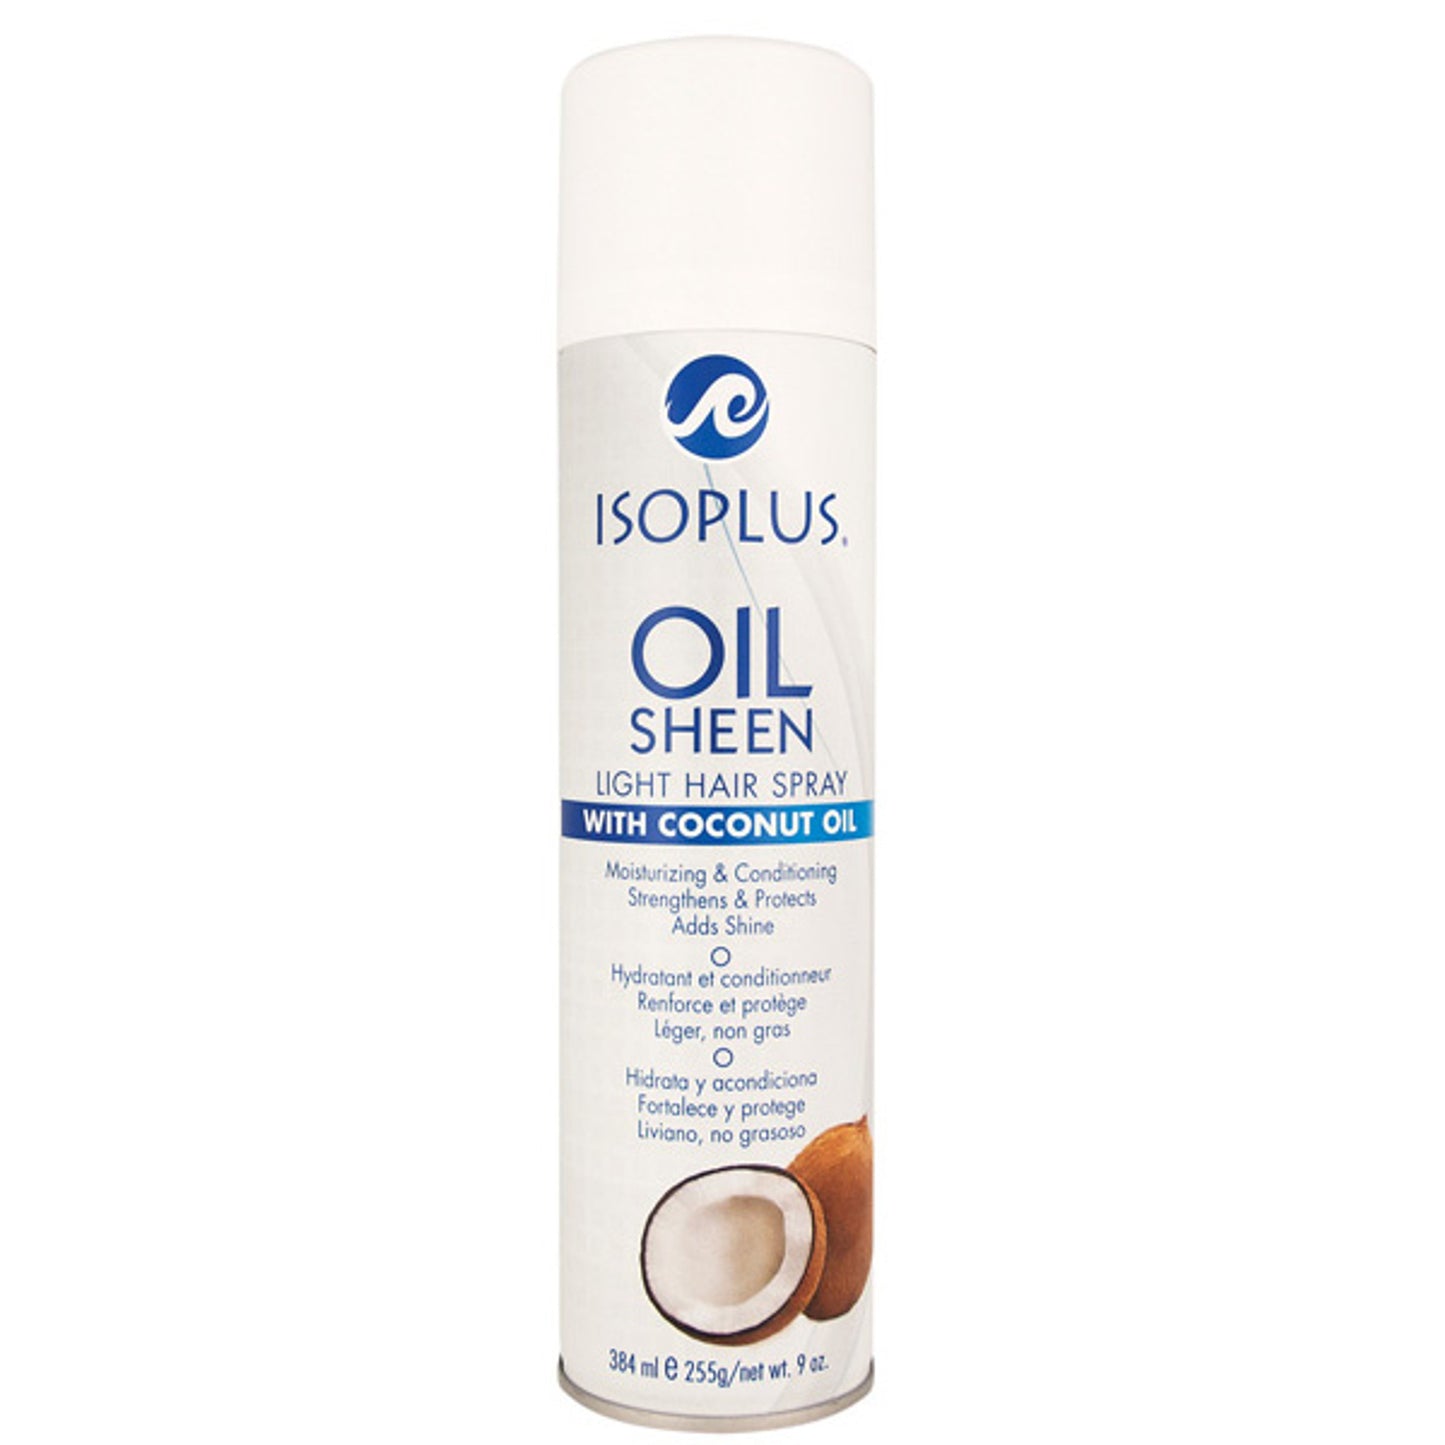 Isoplus Oil Sheen Light Hair Spray - Coconut Oil - 9oz